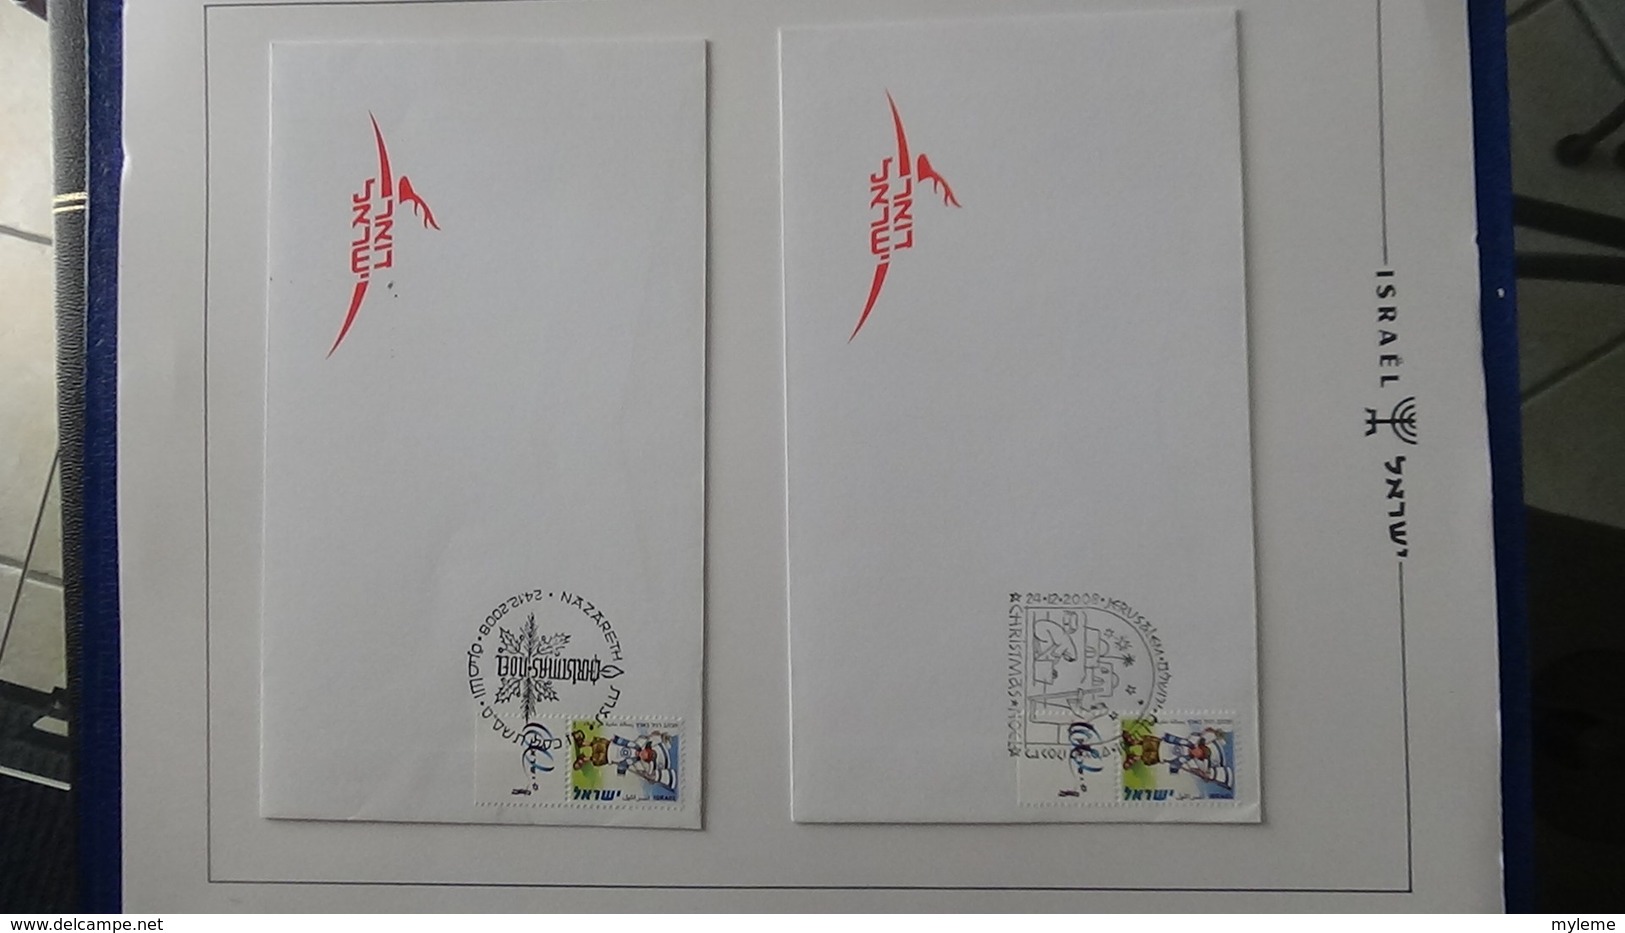 Grosse collection Israël ** + enveloppes Noël en classeur SCHEPS vol 5 de 2002 à 2007. Belle qualité !!!